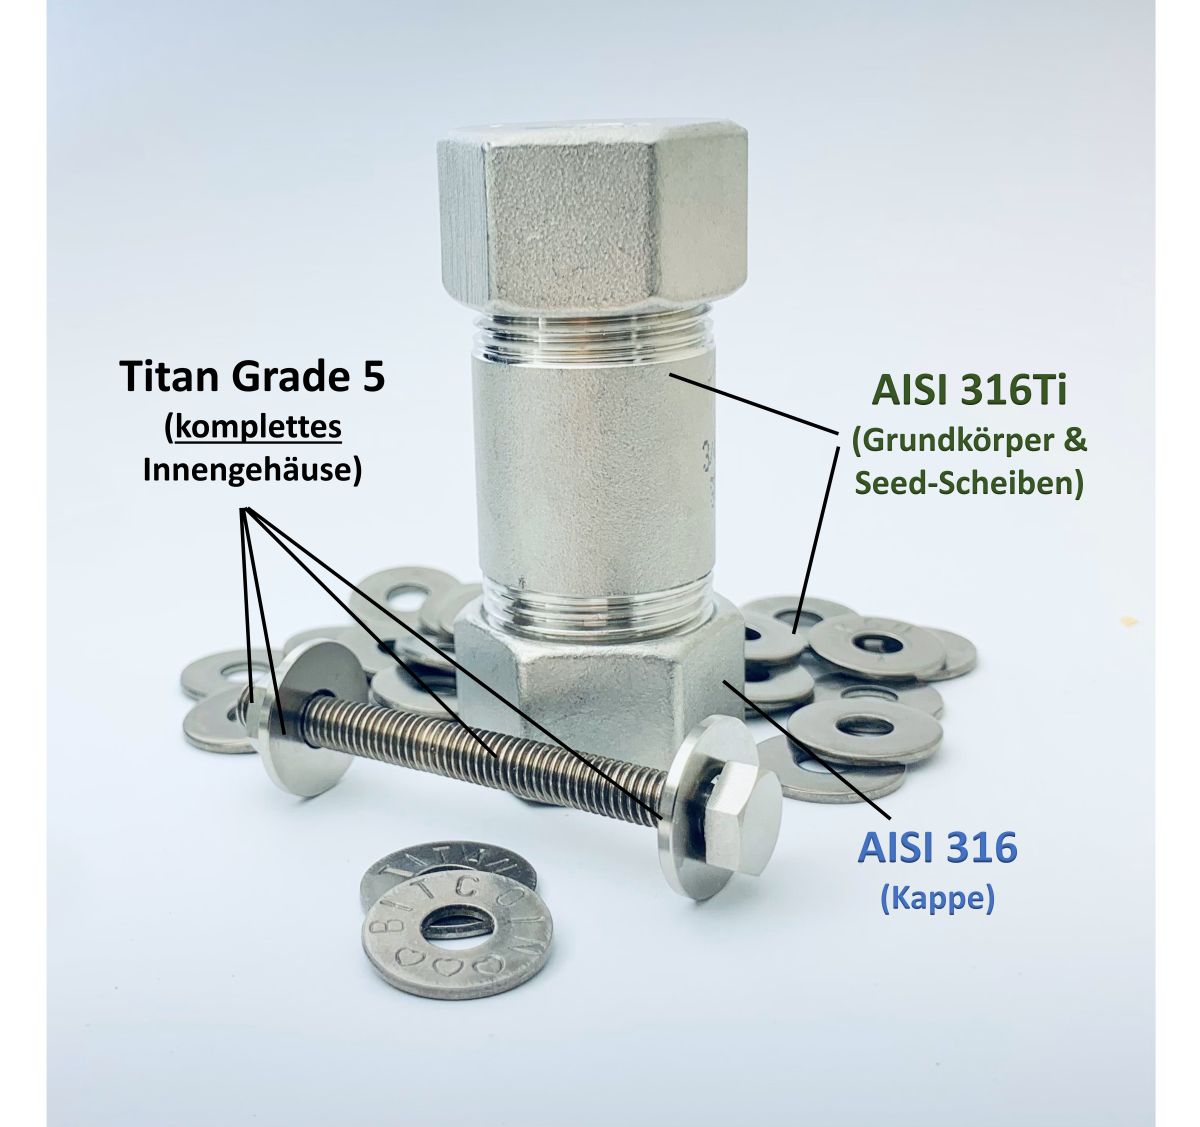 Materialkennzeichnung der Titan Wallet - AISI316TI für Grundkörper und Scheiben, Titan Grade 5 für das Innengehäuse, AISI 316 für die Kappen.